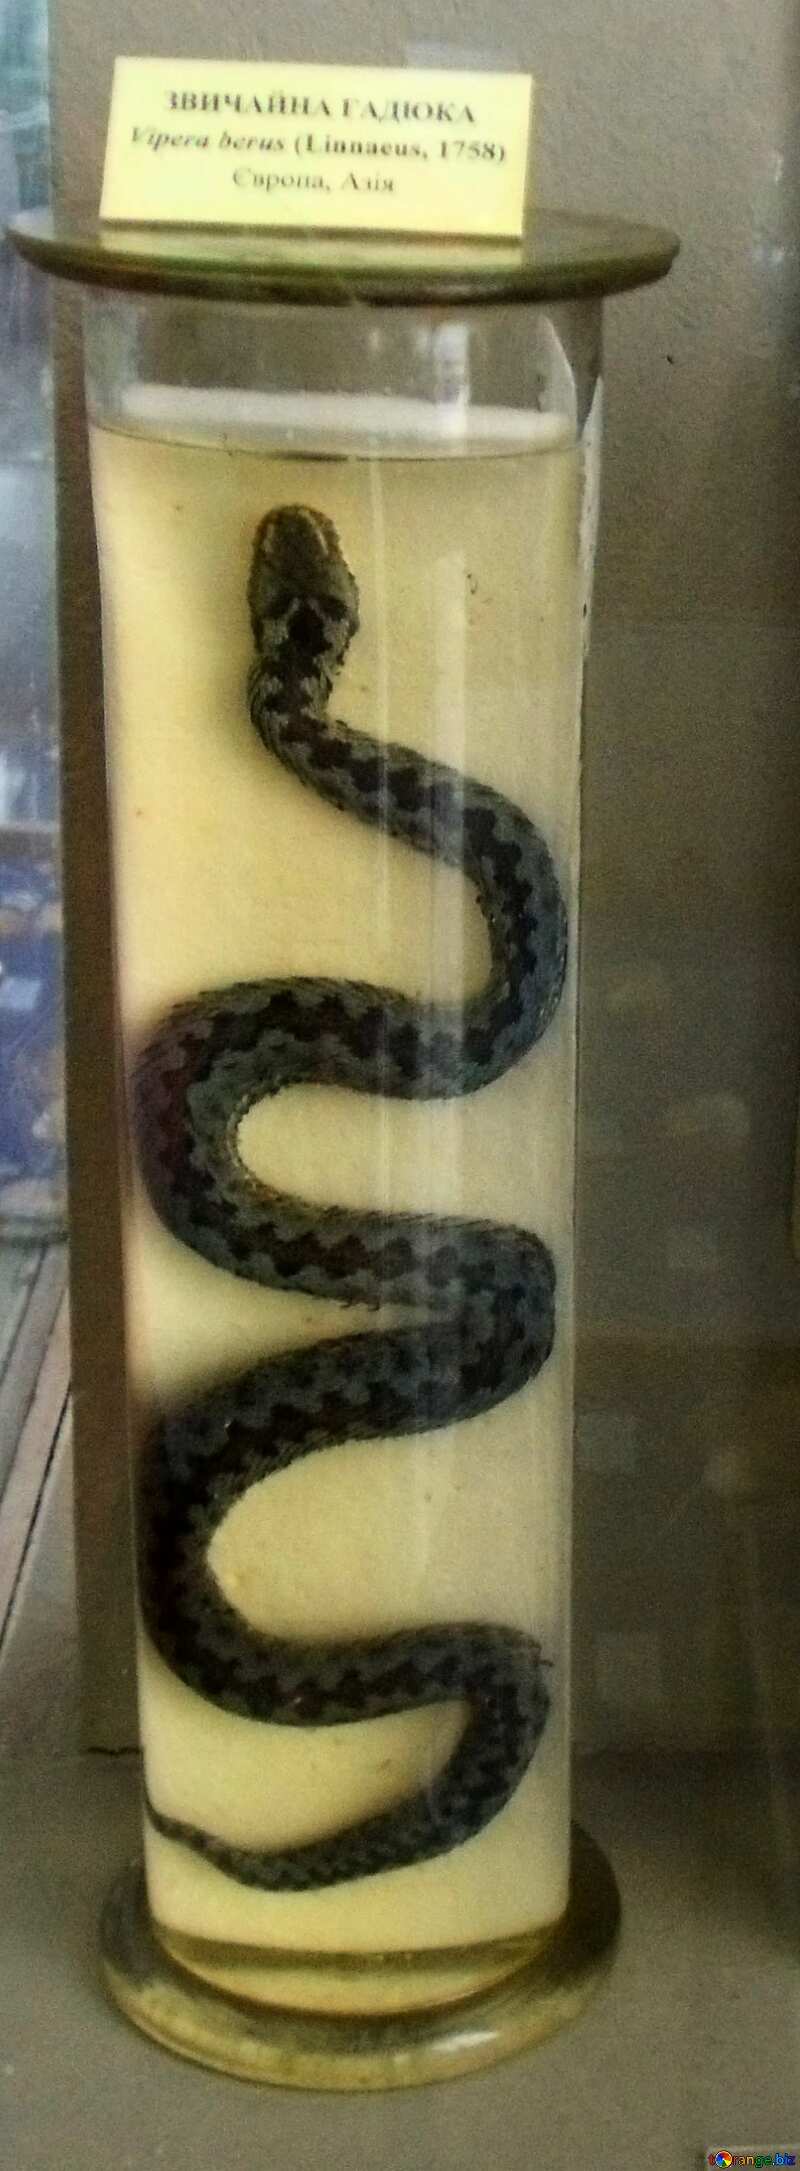 Poisonous snake European №21321